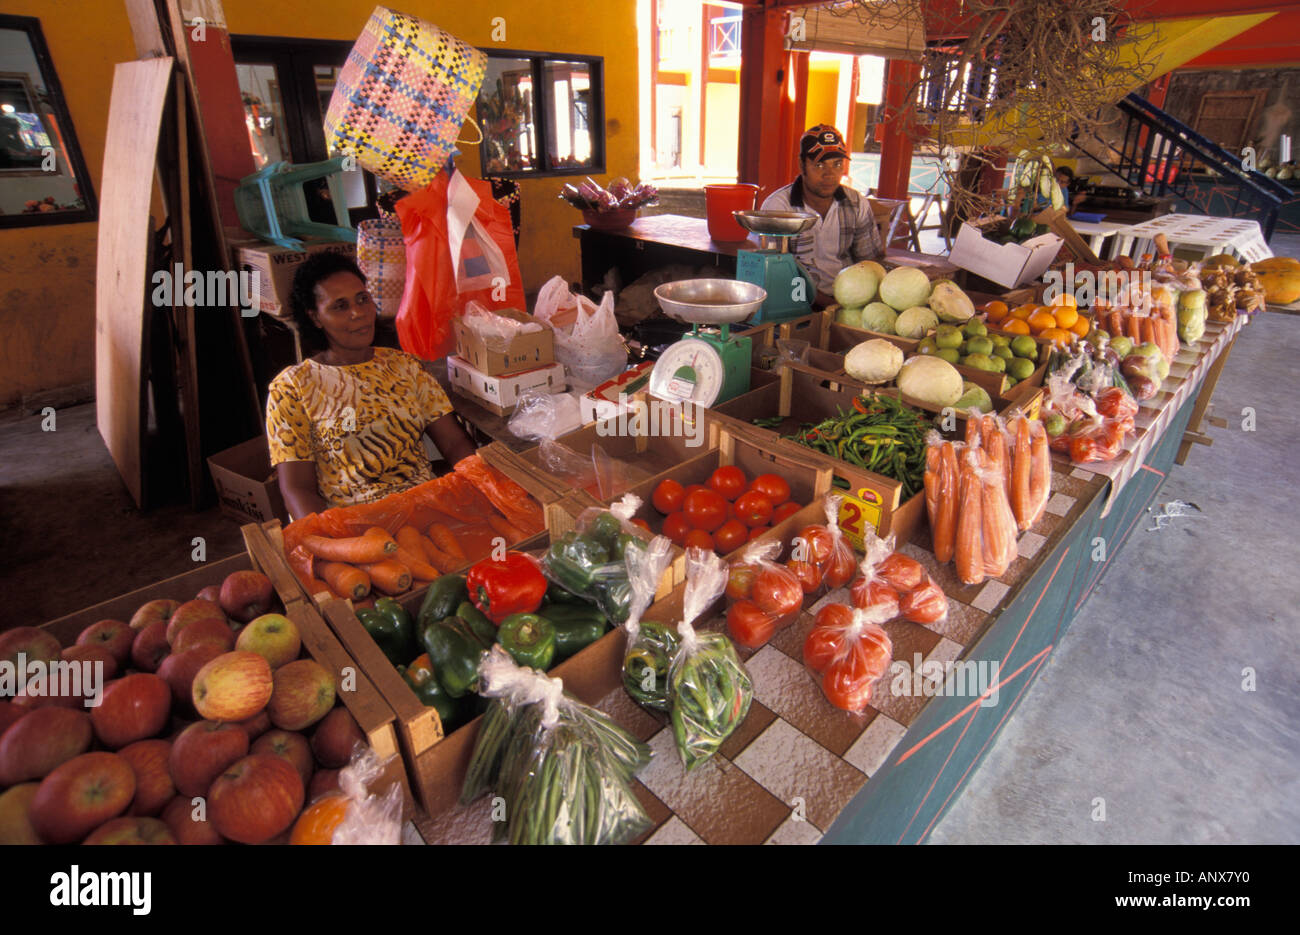 Seychelles, Mahe Island, Victoria City market Stock Photo: 8922095 ...